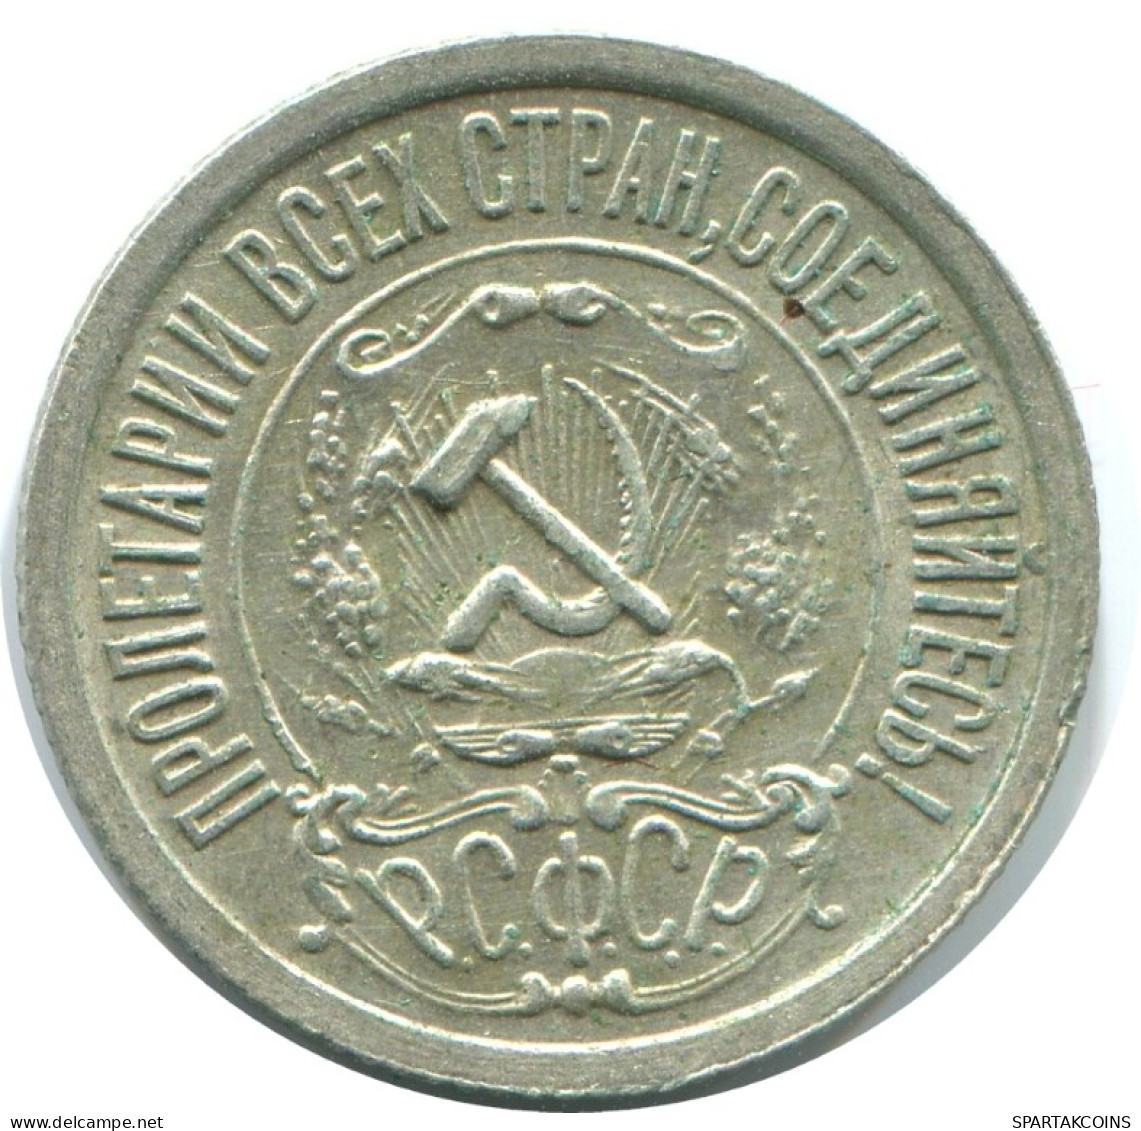 15 KOPEKS 1922 RUSSLAND RUSSIA RSFSR SILBER Münze HIGH GRADE #AF205.4.D.A - Russia